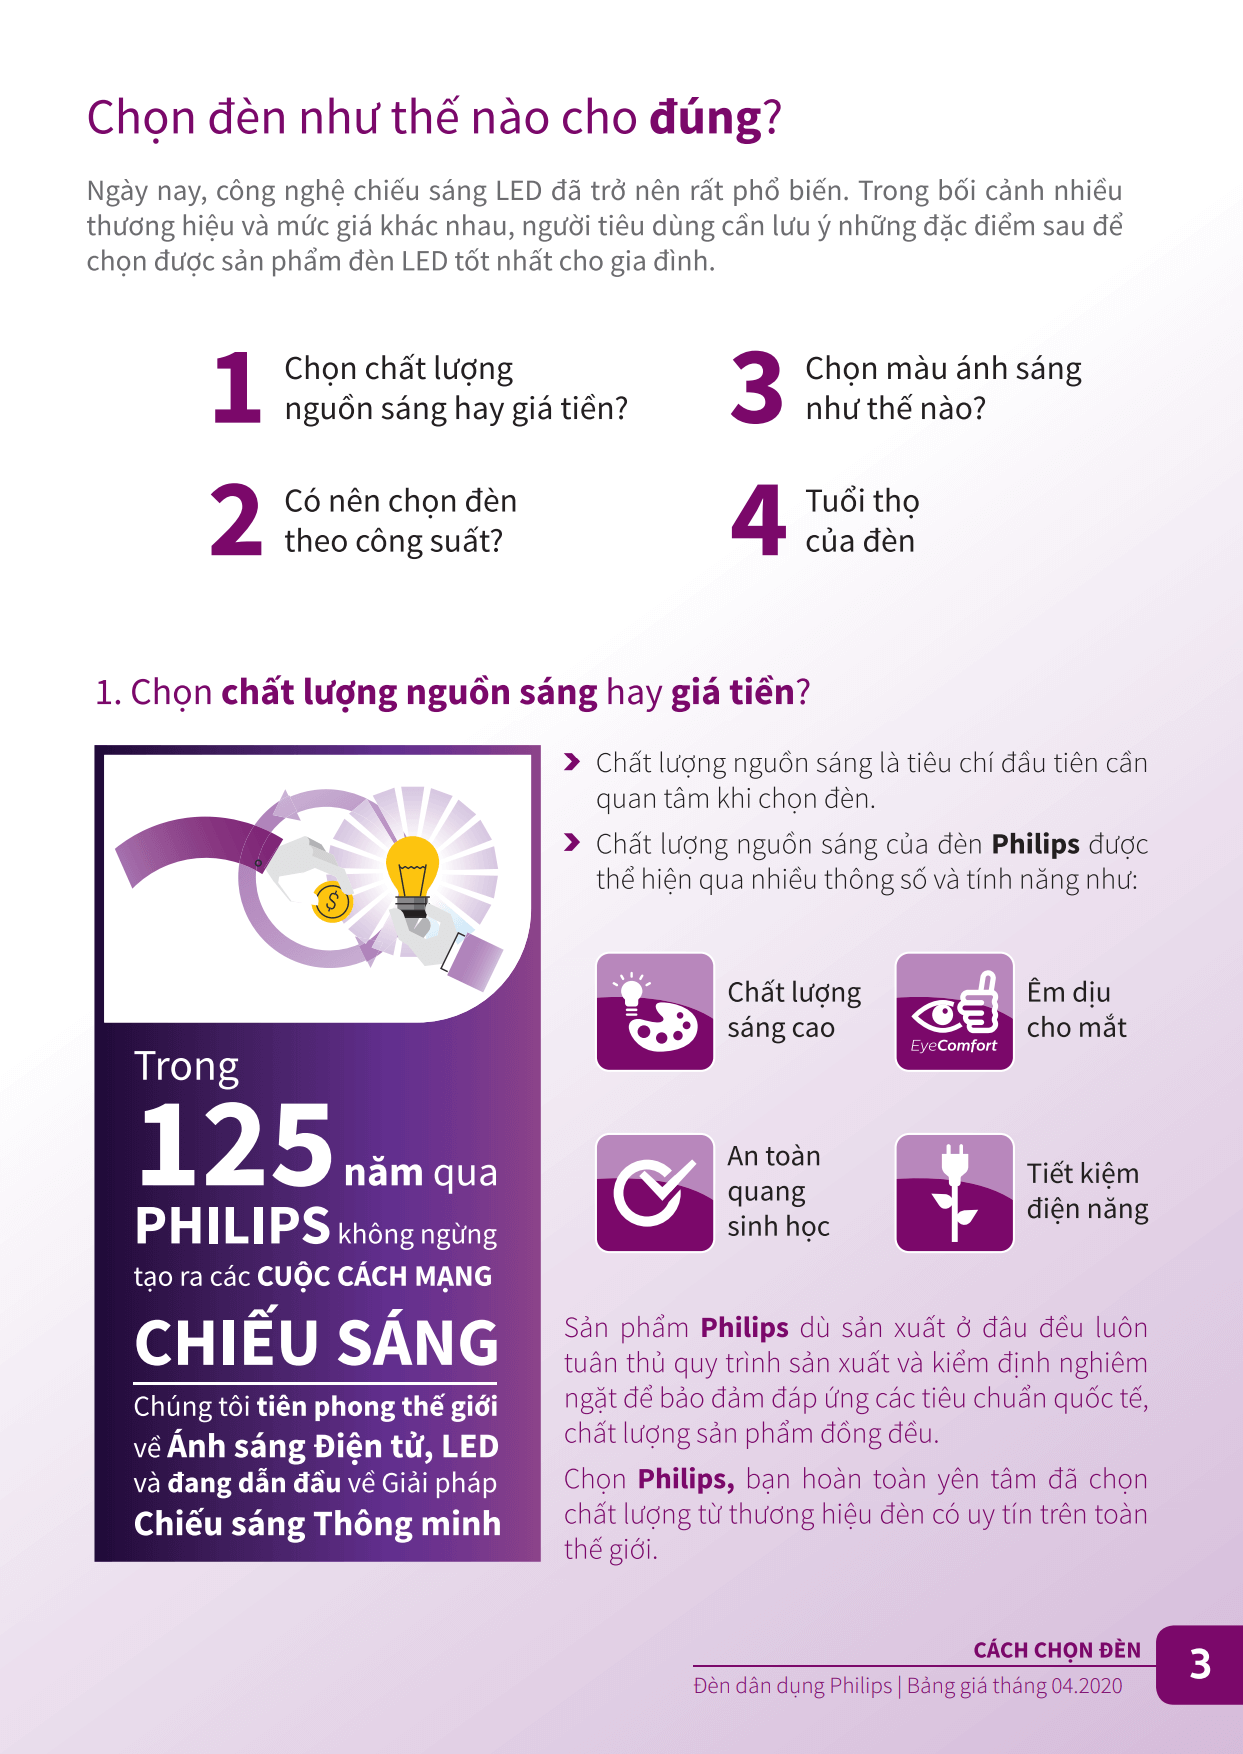 Cách chọn đèn Led Philips cho đúng - bạn lựa chọn chất lượng nguồn sáng hay giá tiền